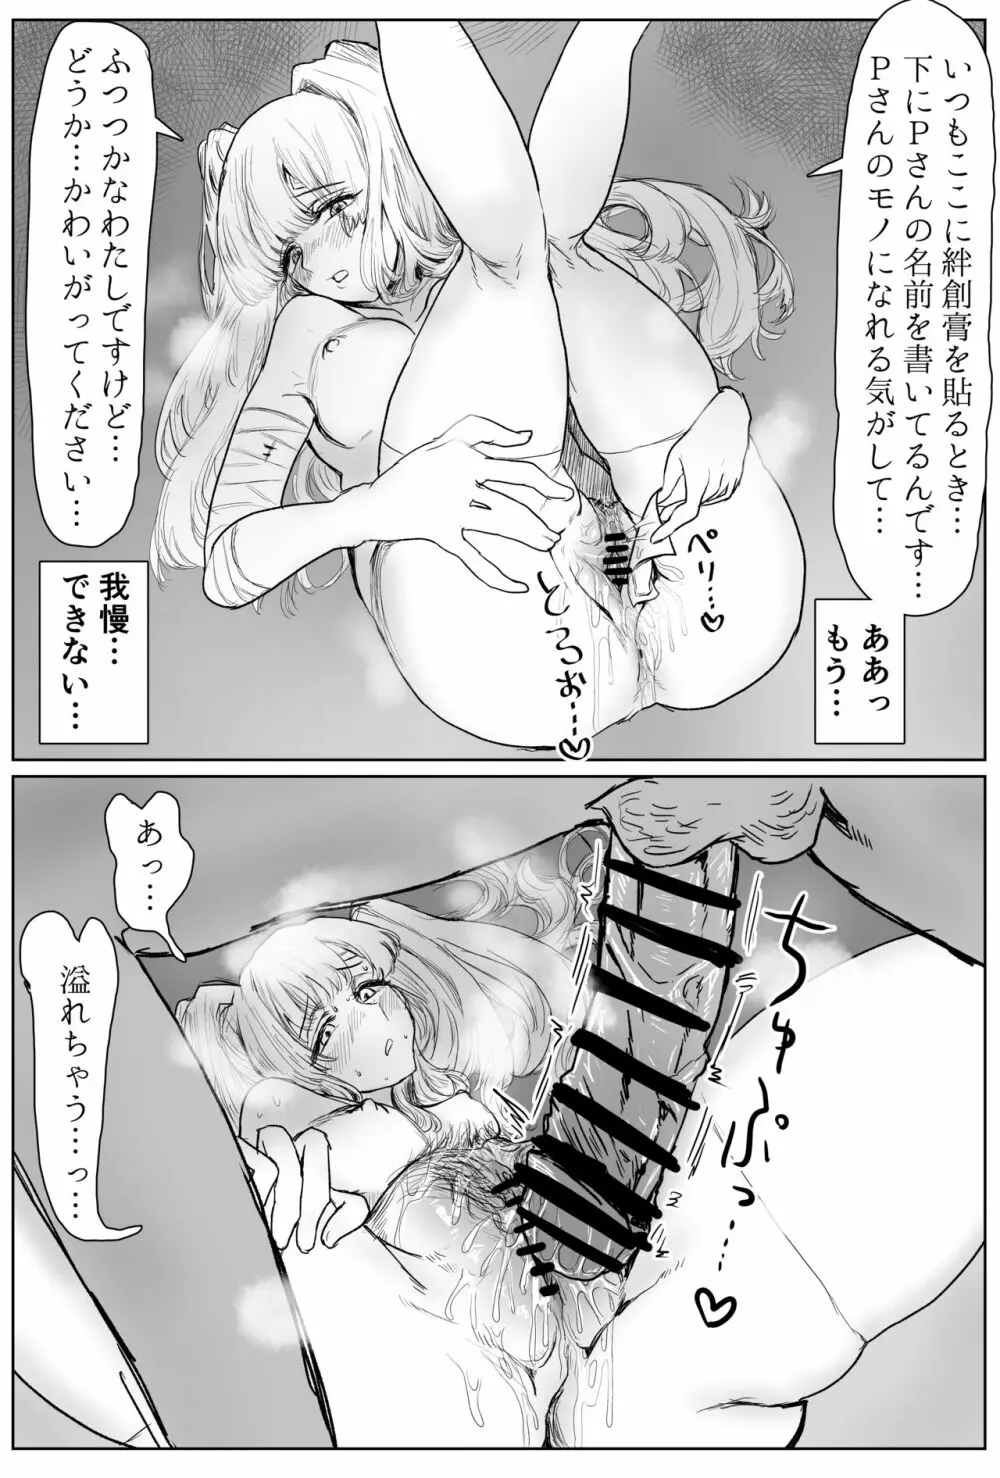 霧子がエッチなのは解釈違いなPと普通にエッチな霧子のエロ漫画 7ページ